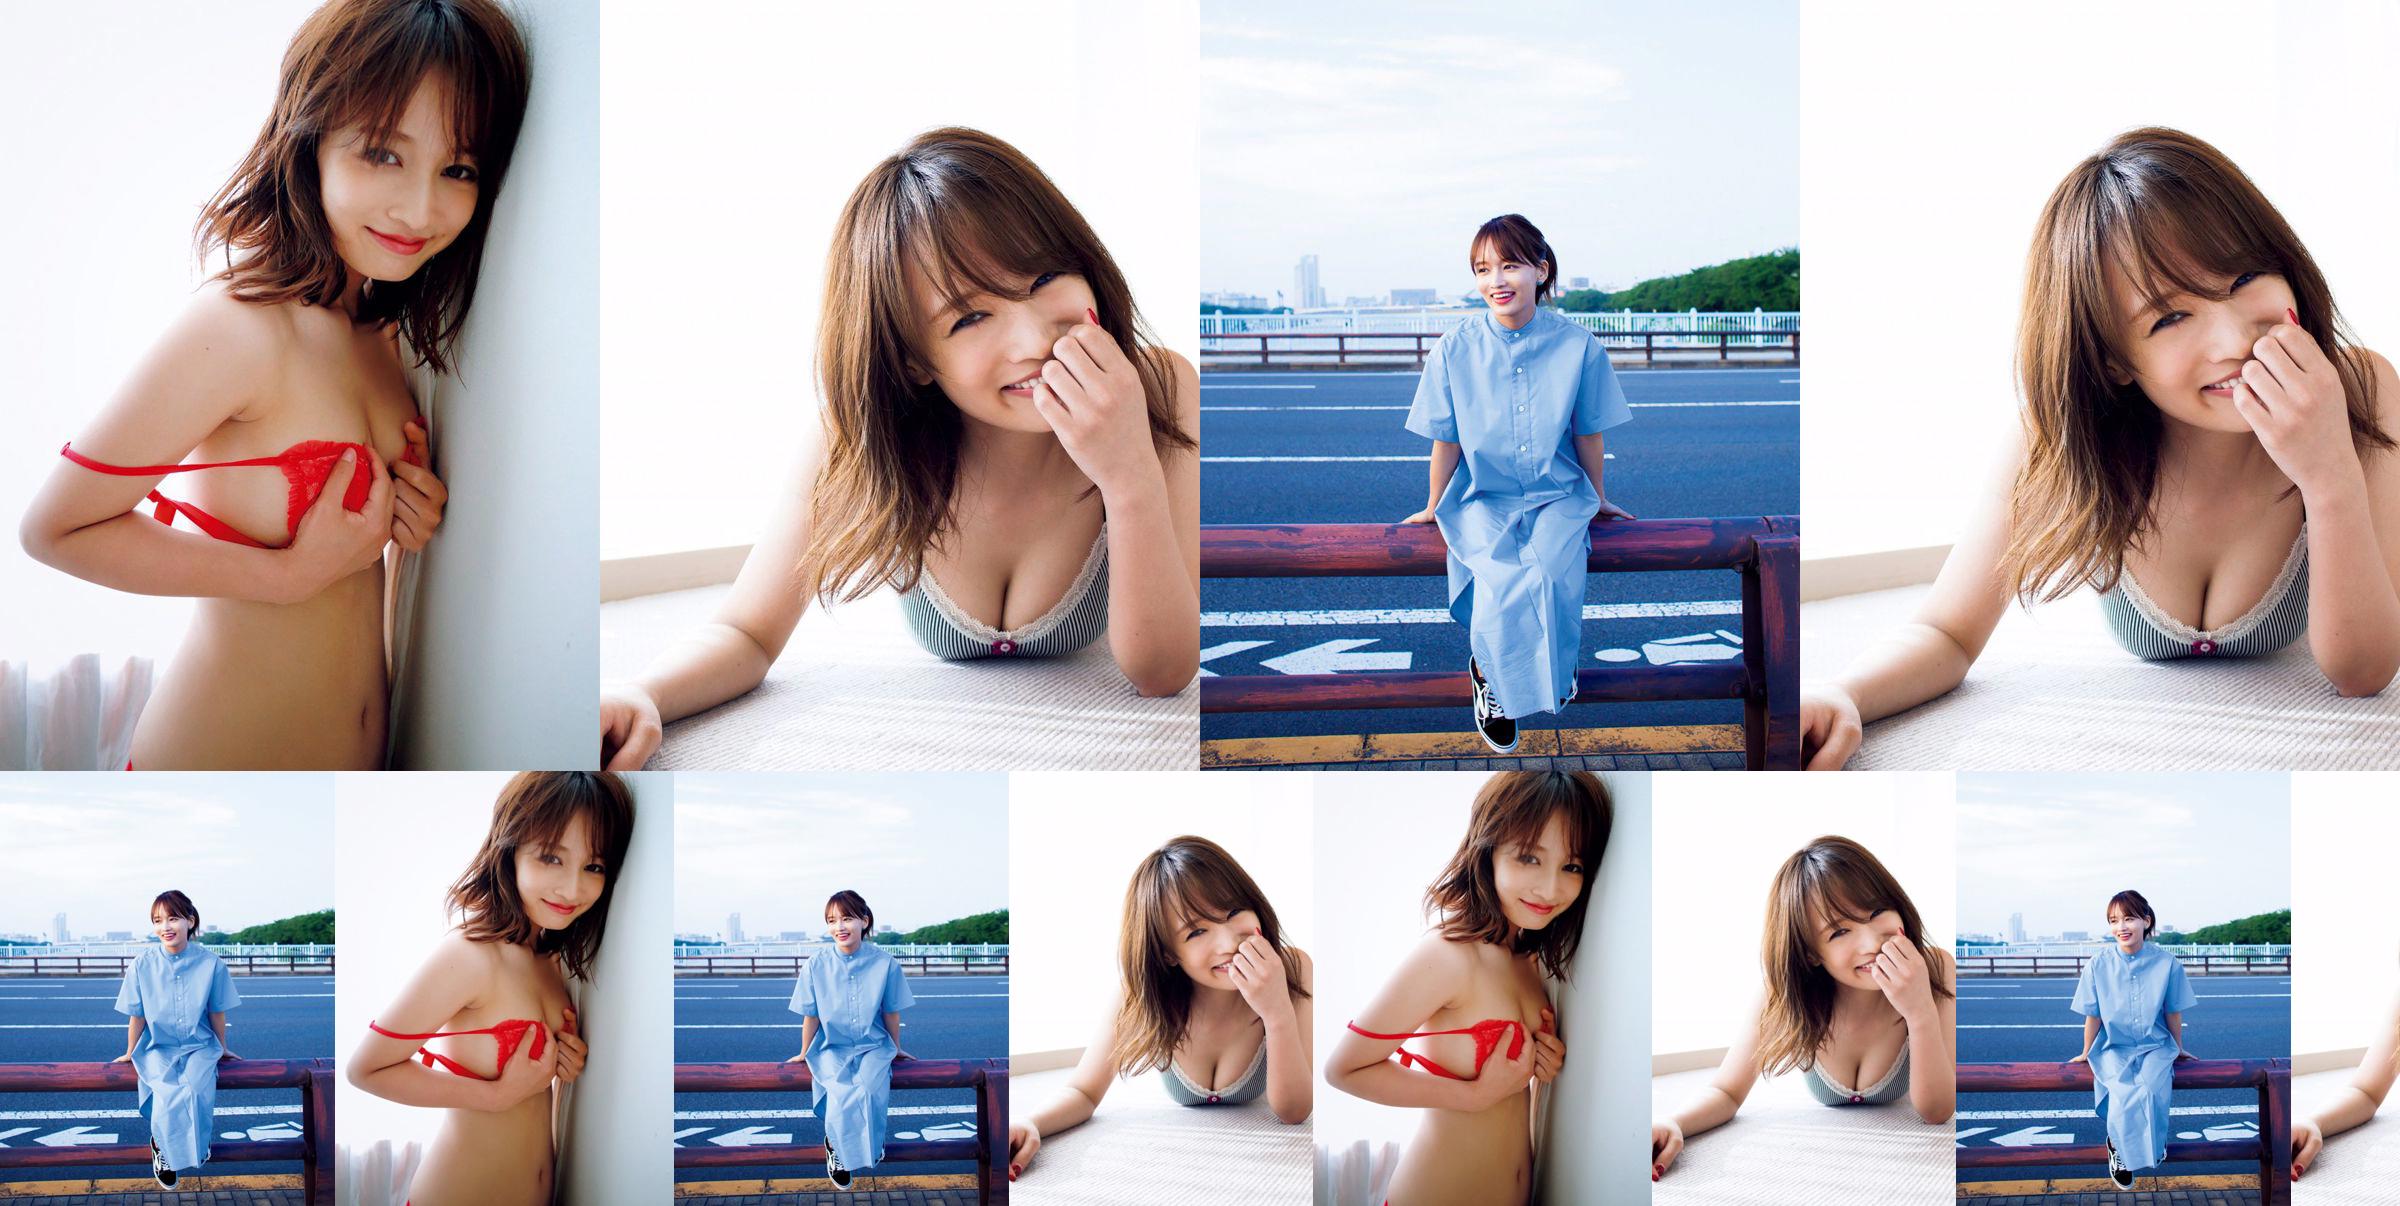 [VIERNES] Mai Watanabe "Copa F con un cuerpo delgado" foto No.318645 Página 2